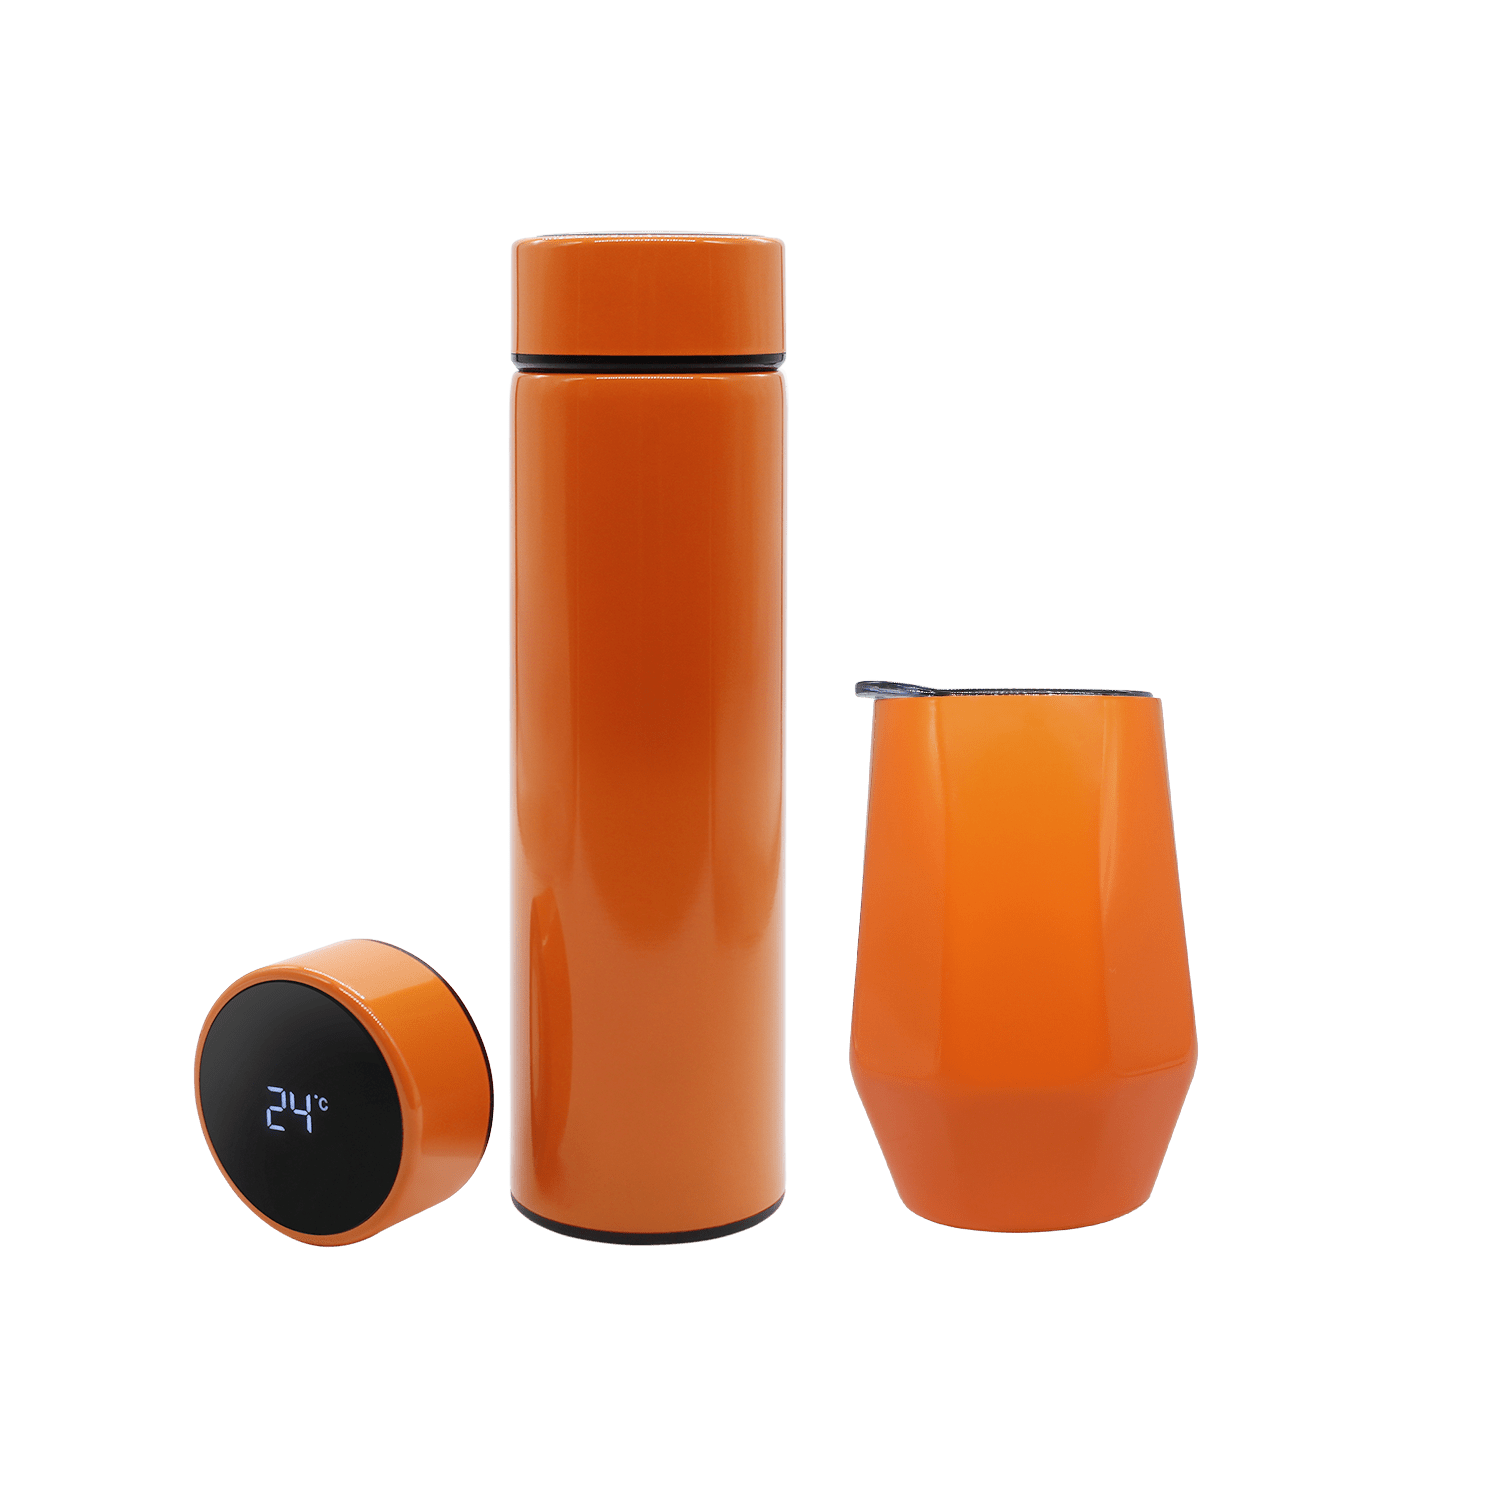 Набор Hot Box E W (оранжевый), оранжевый, металл, микрогофрокартон